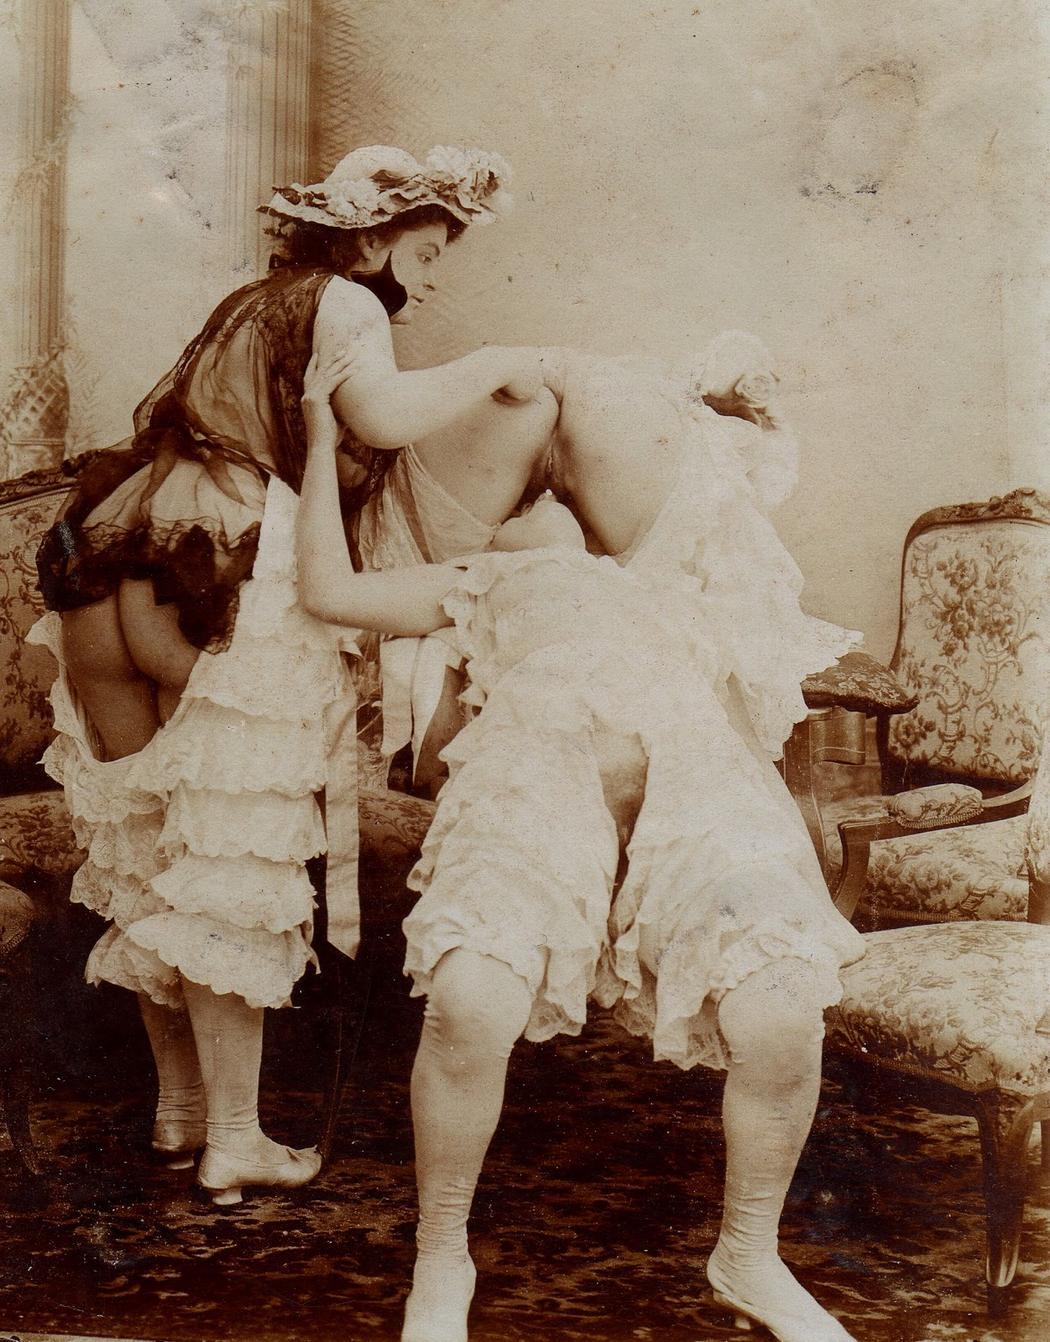 Victorian era sex treatment